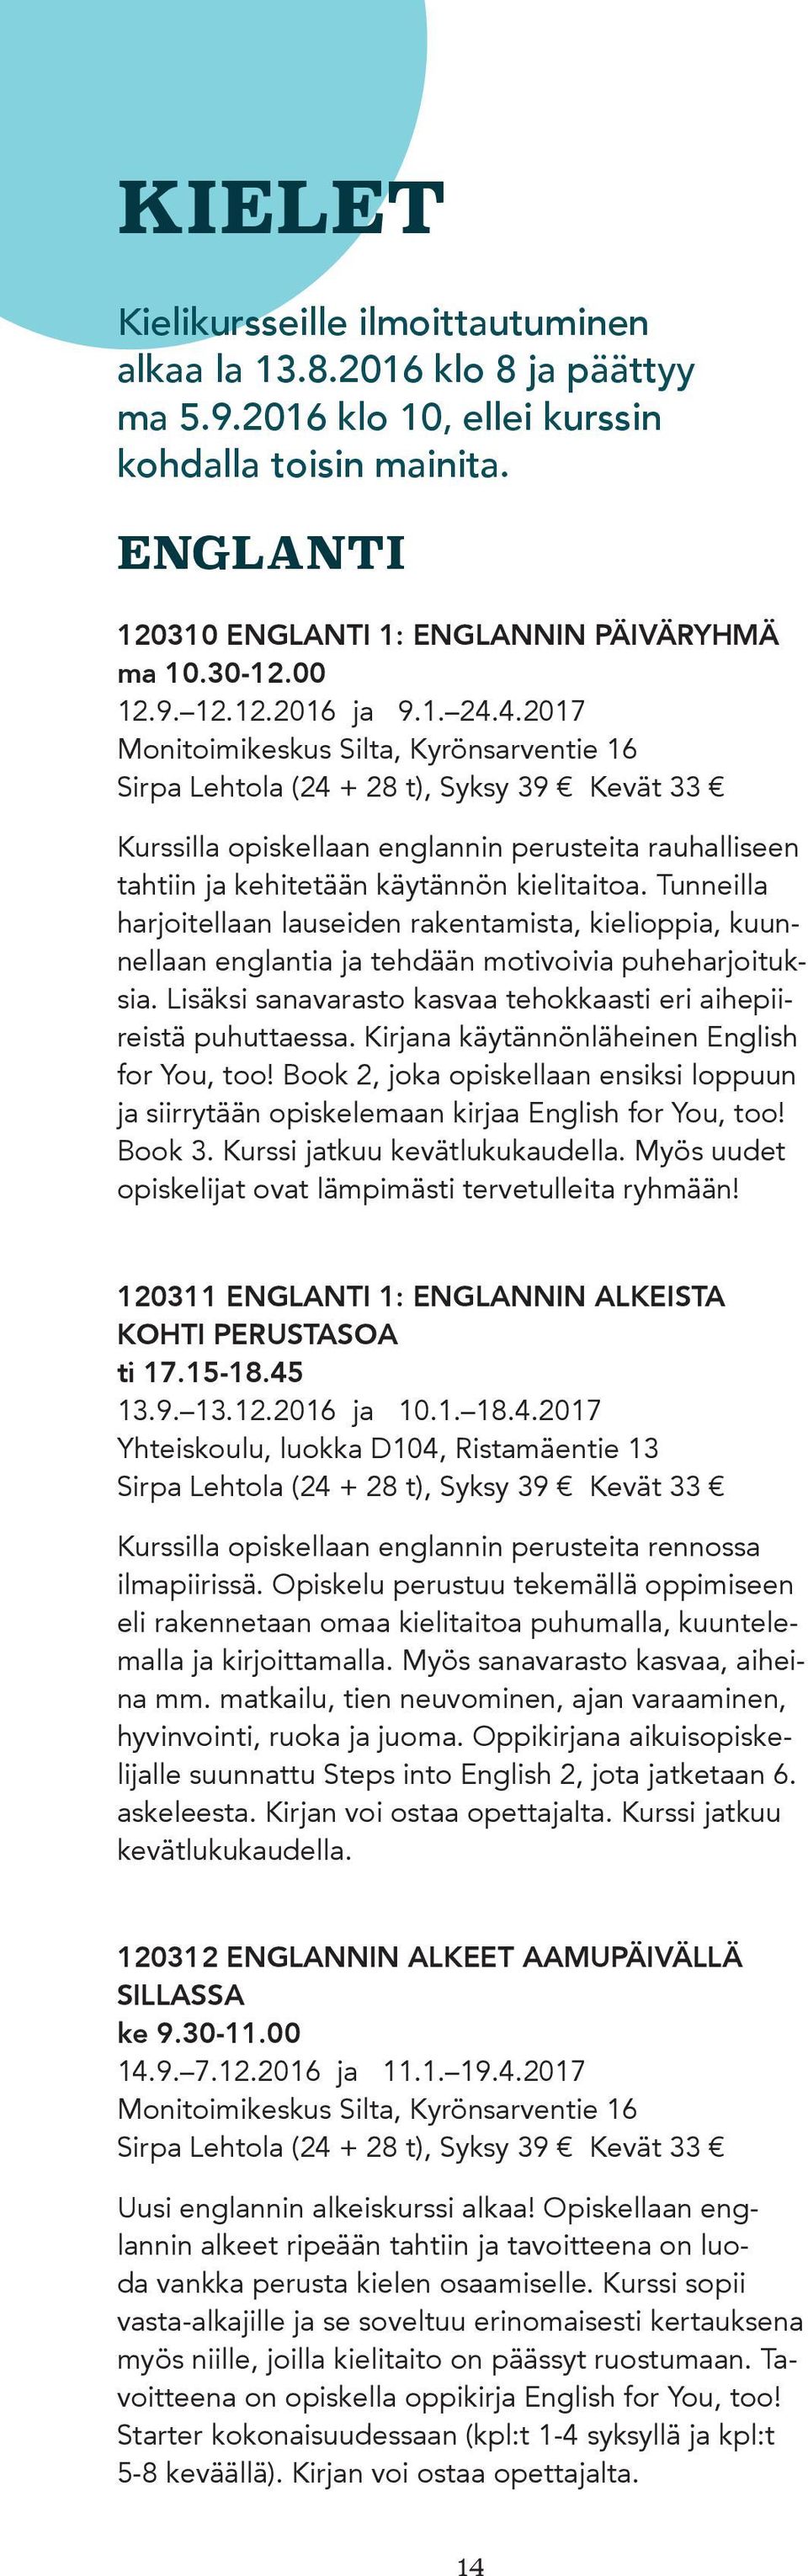 4.2017 Monitoimikeskus Silta, Kyrönsarventie 16 Sirpa Lehtola (24 + 28 t), Syksy 39 Kevät 33 Kurssilla opiskellaan englannin perusteita rauhalliseen tahtiin ja kehitetään käytännön kielitaitoa.